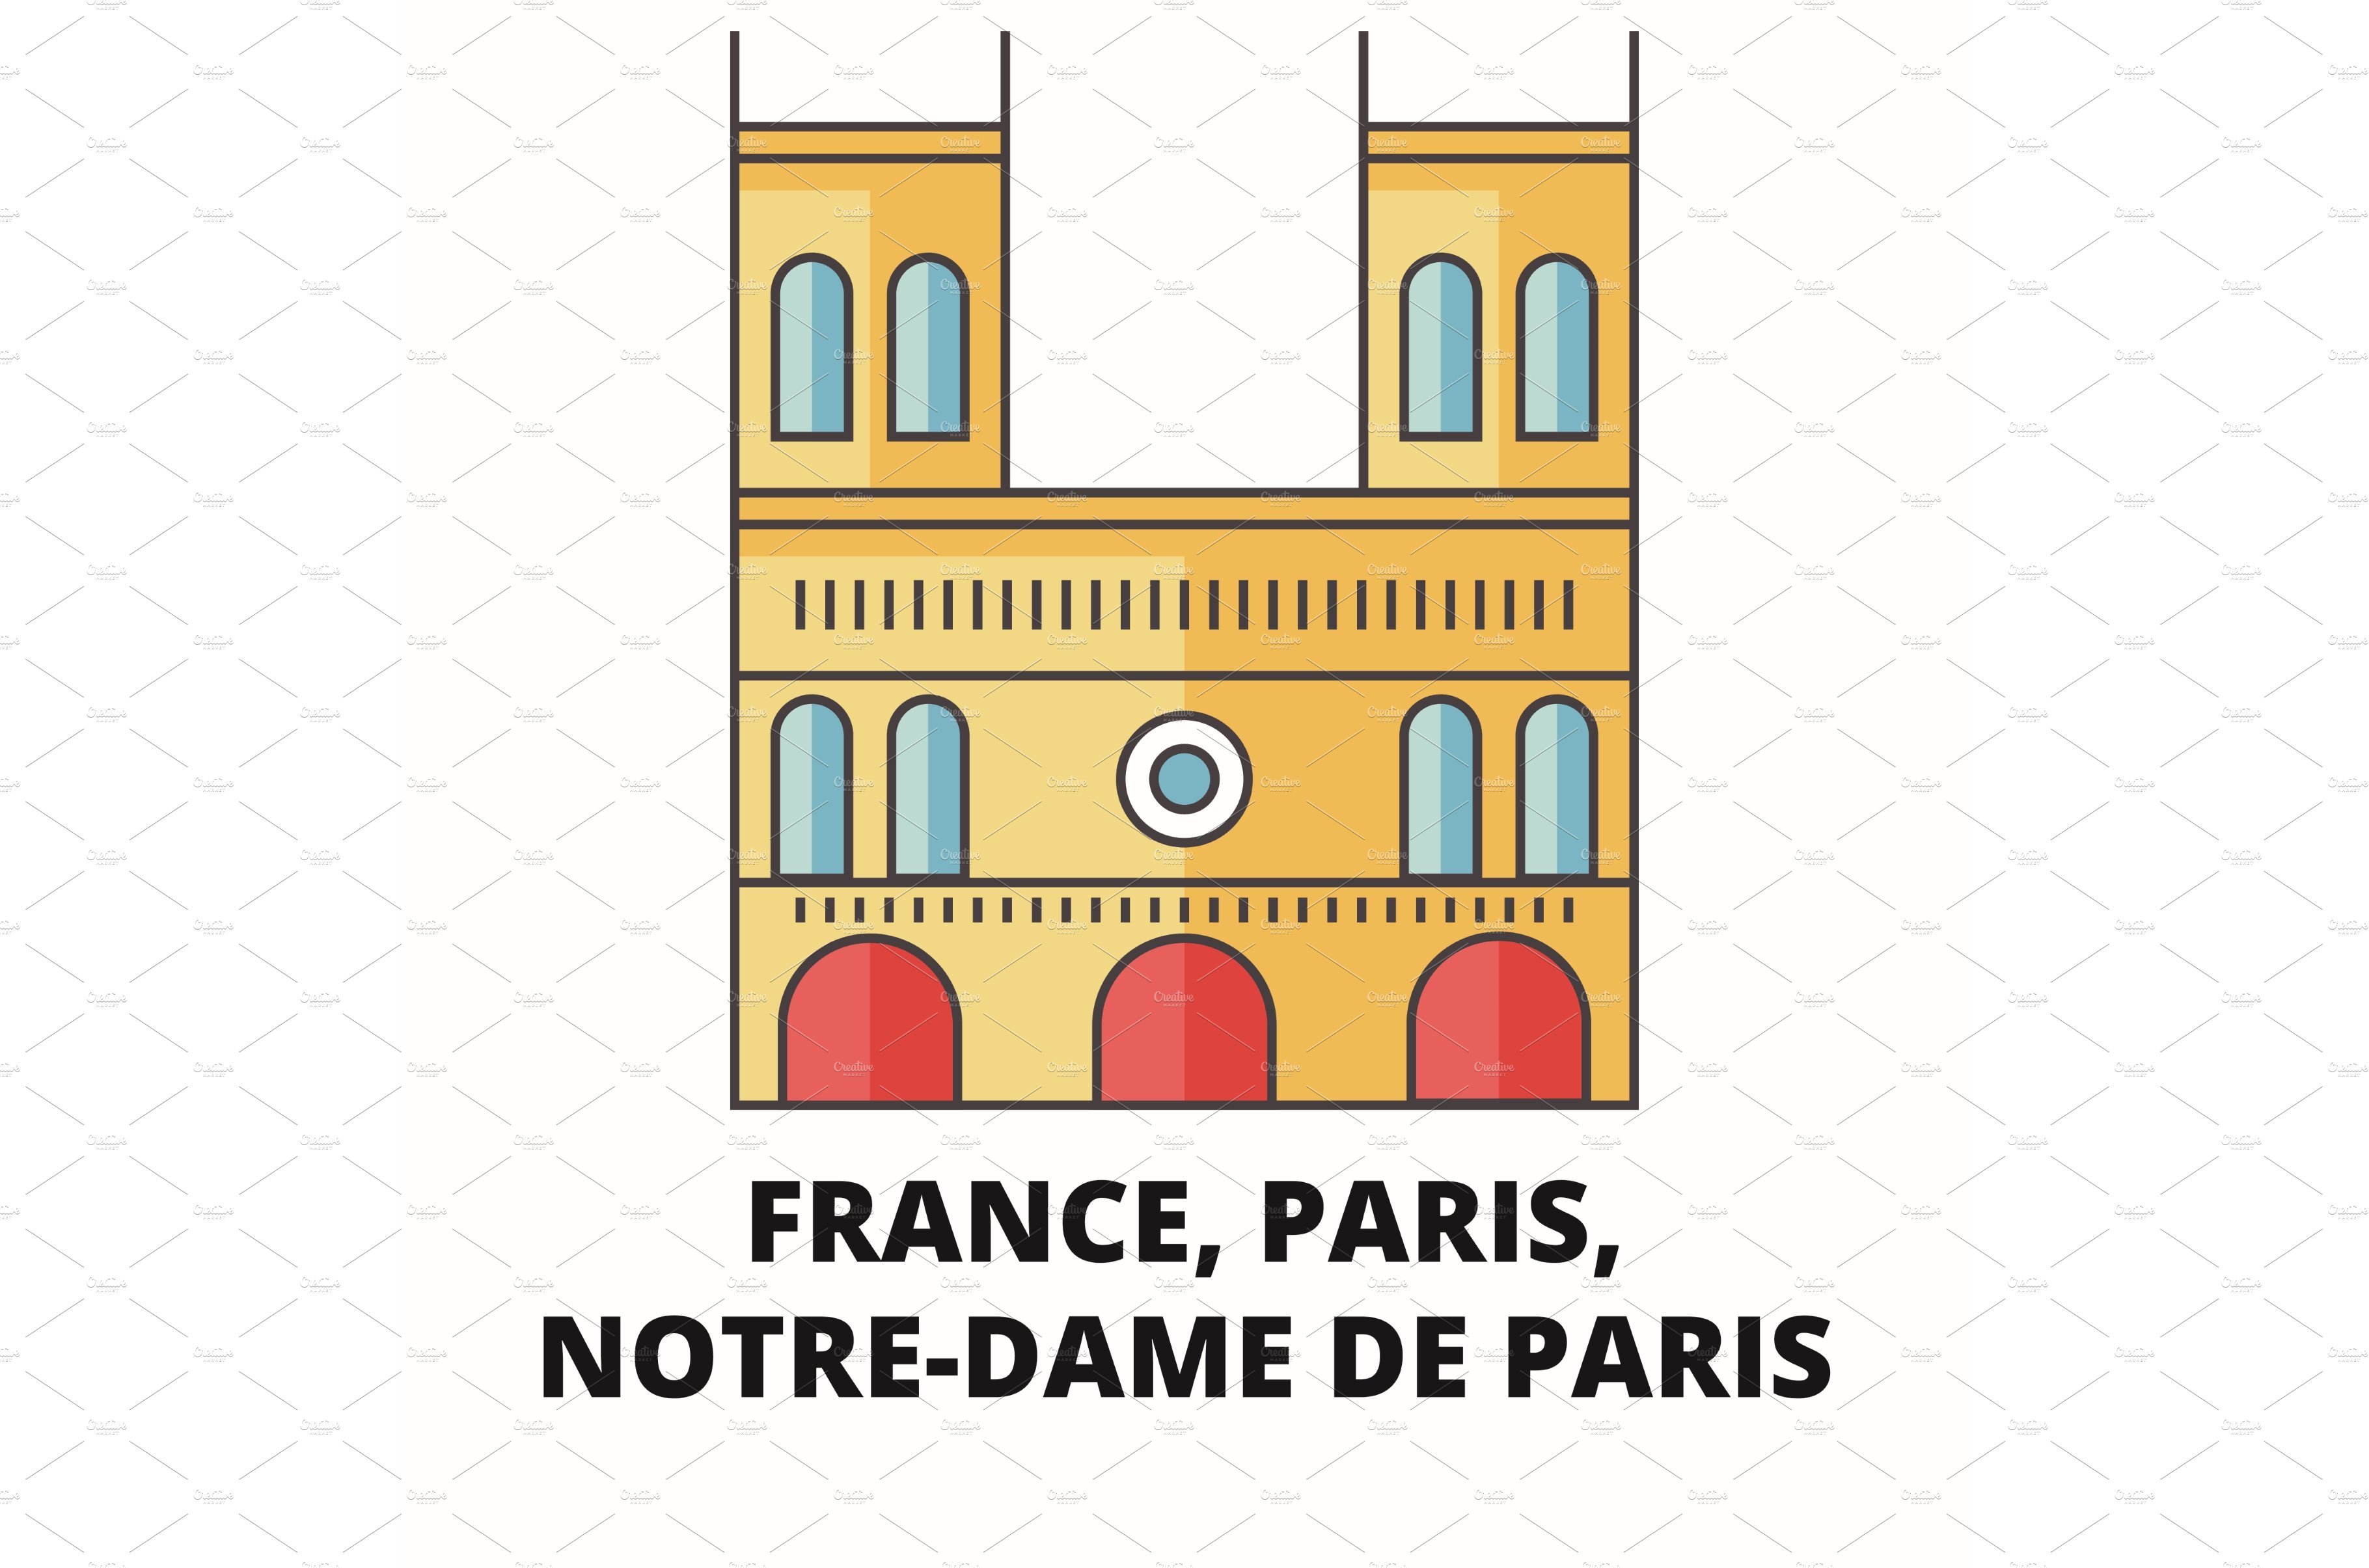 France, Paris, Notre Dame De Paris cover image.